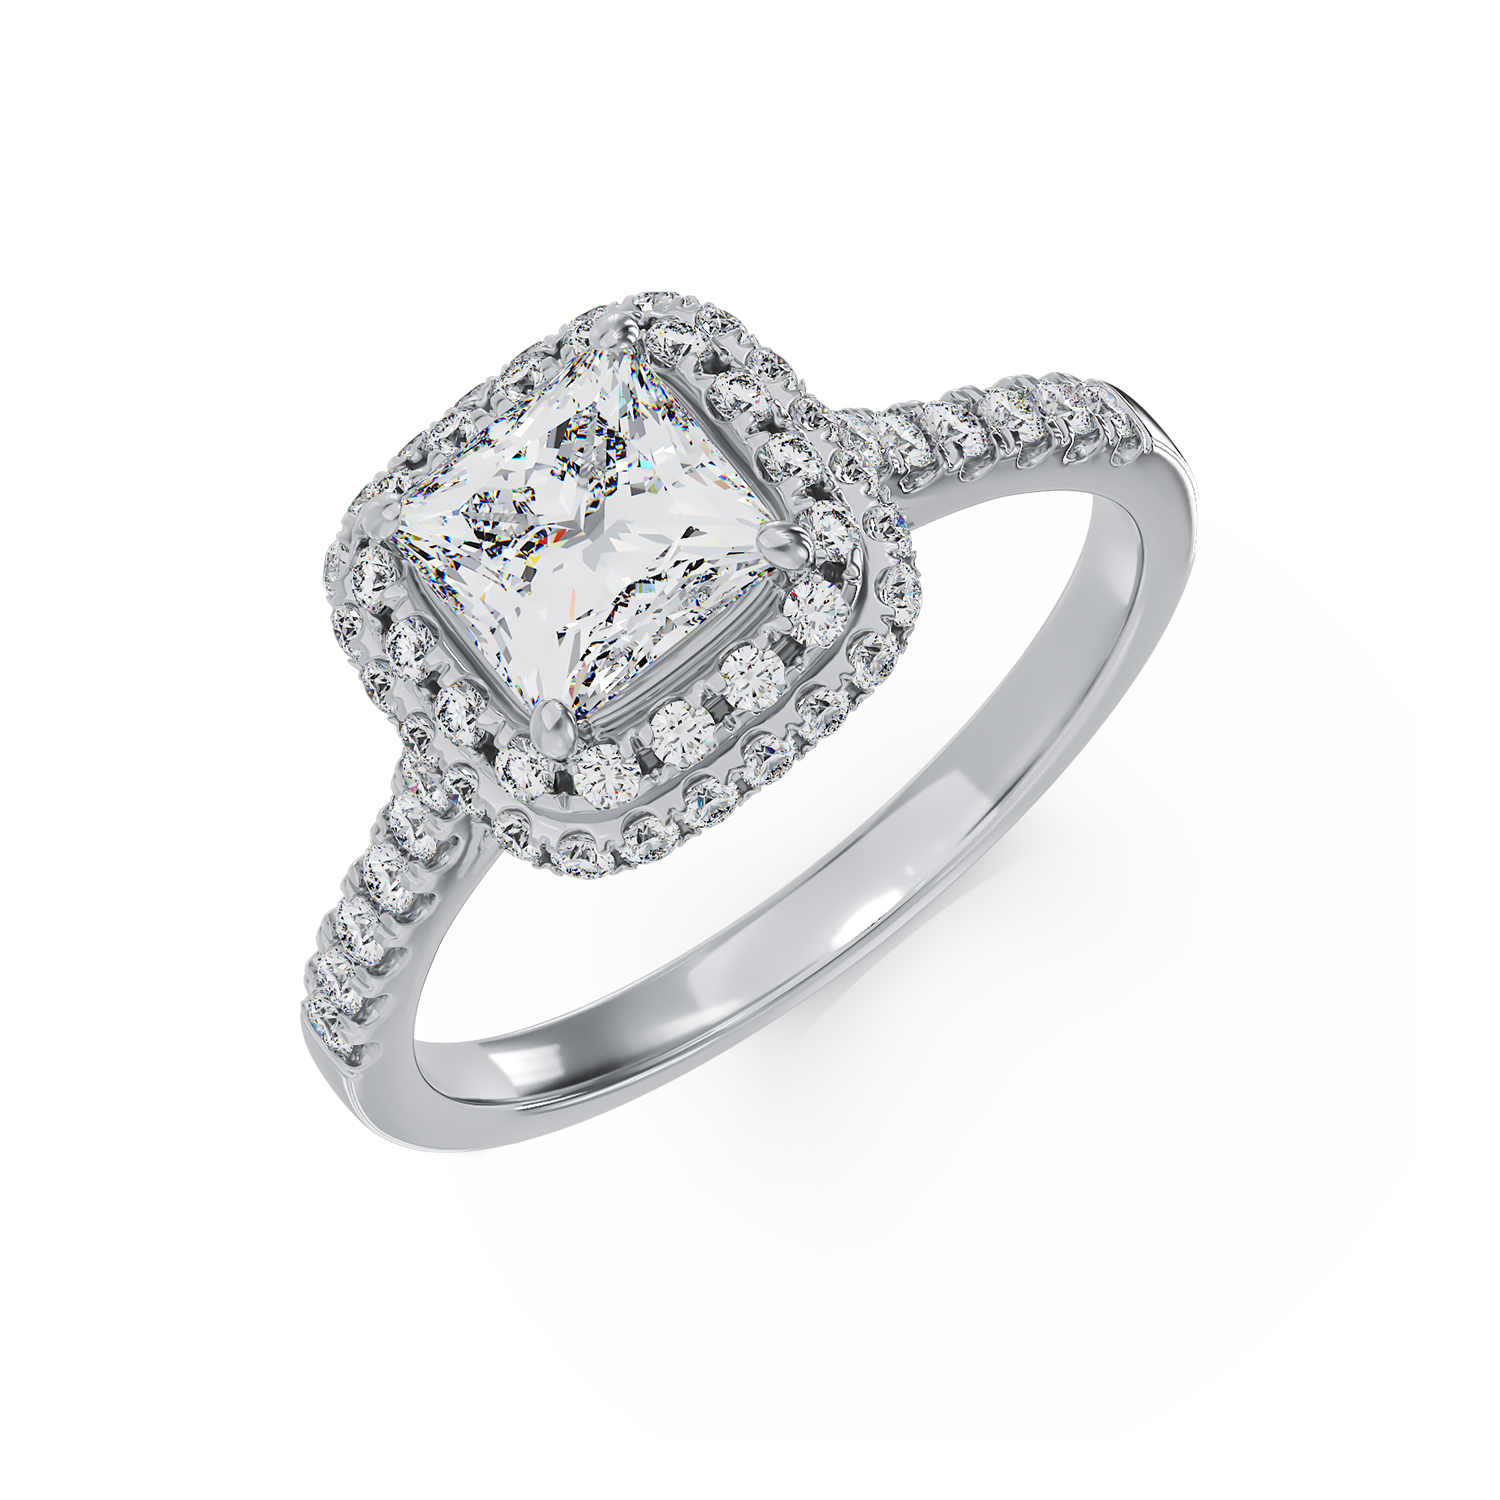 18K fehérarany eljegyzési gyűrű 1.01ct gyémánttal és 0.39ct gyémántokkal